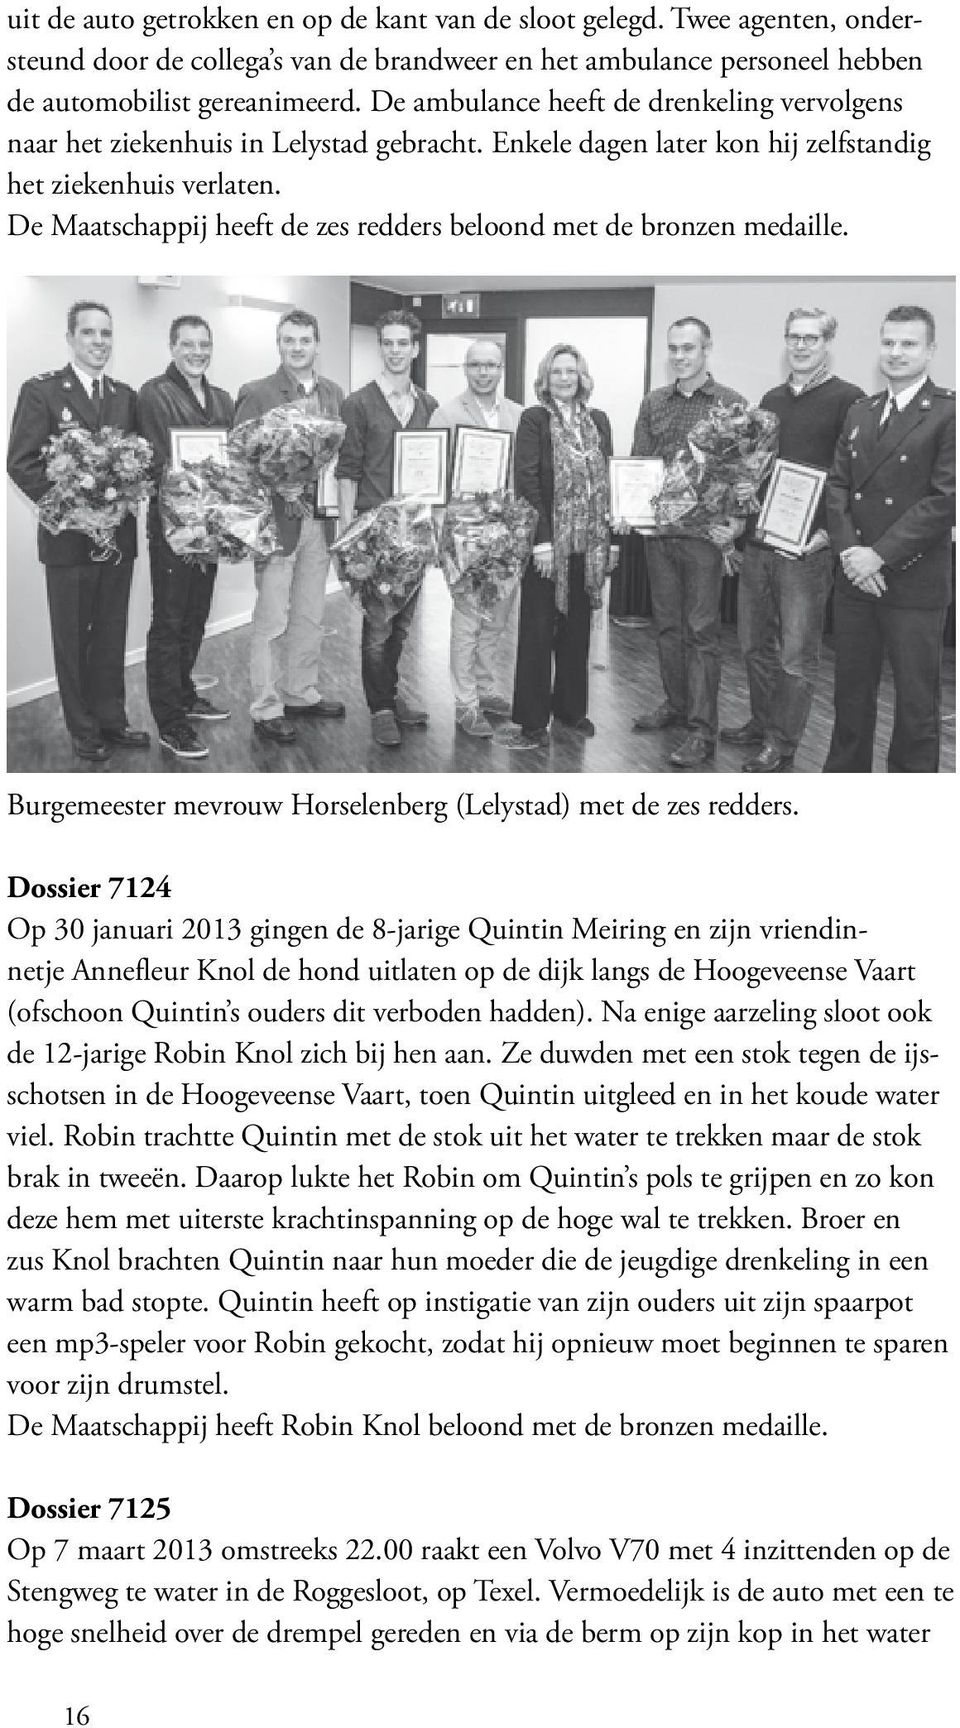 De Maatschappij heeft de zes redders beloond met de bronzen medaille. Burgemeester mevrouw Horselenberg (Lelystad) met de zes redders.